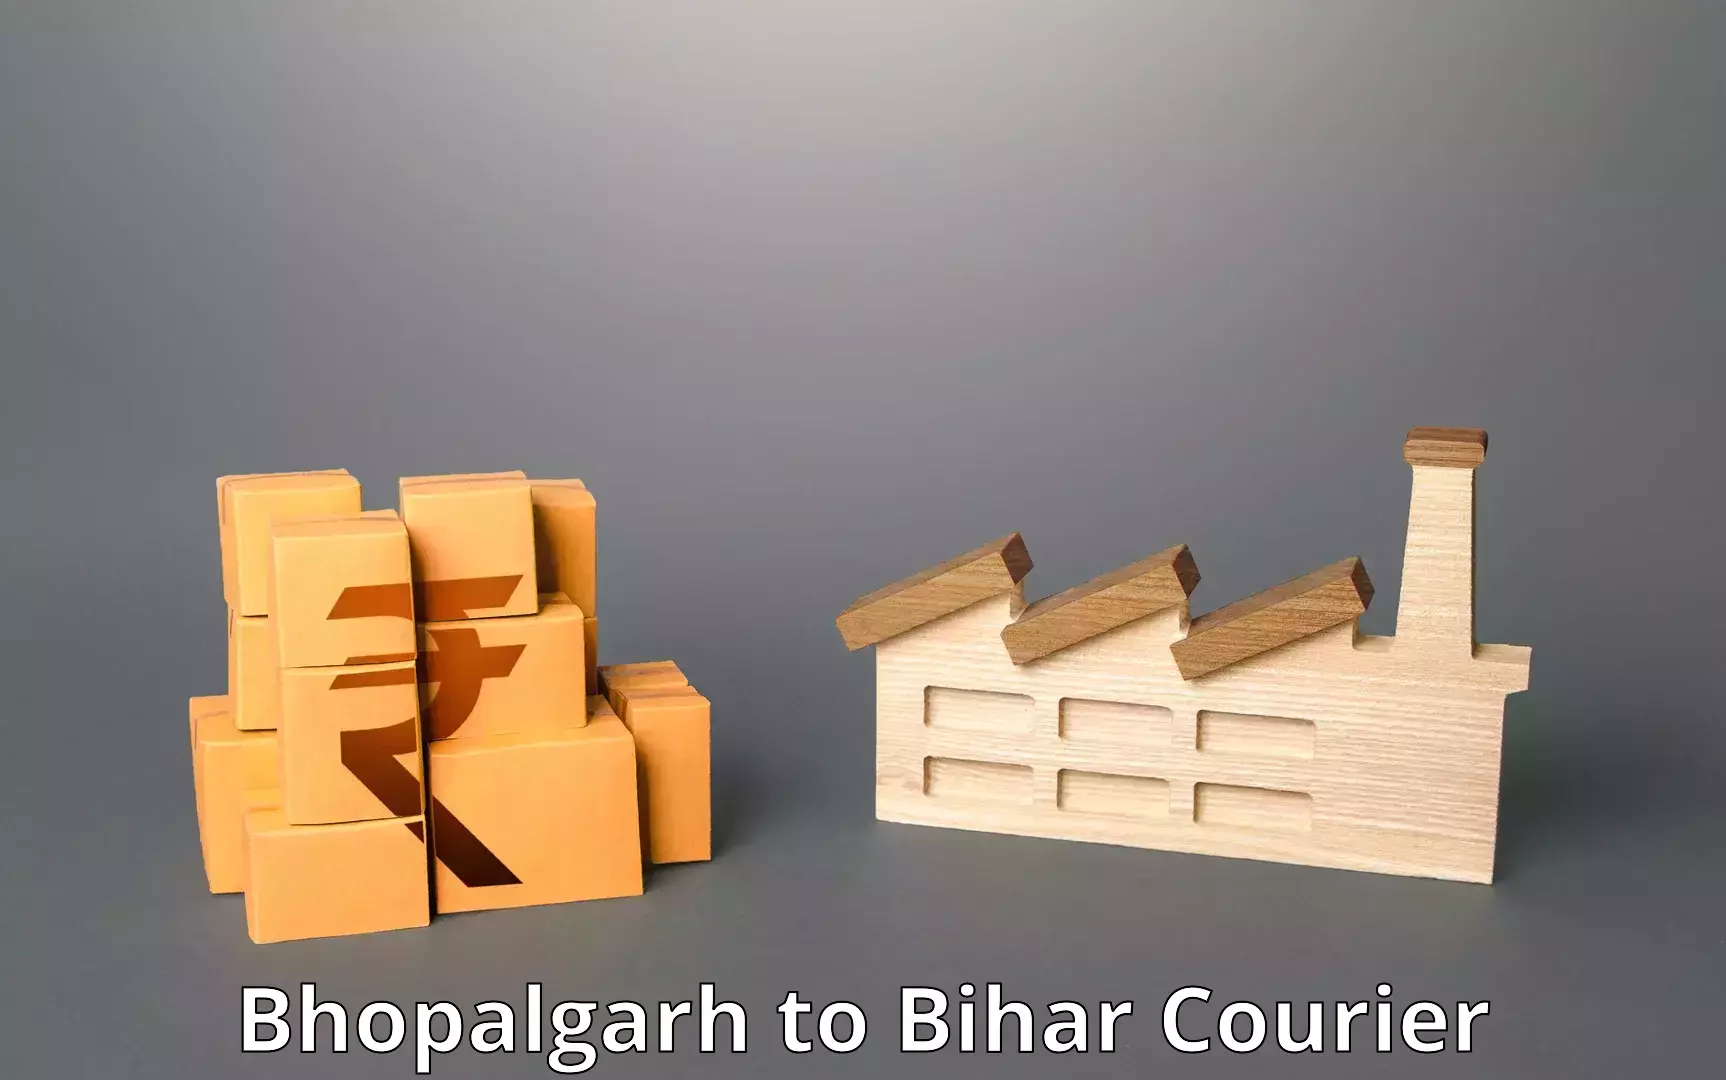 Nationwide shipping capabilities Bhopalgarh to Gaya